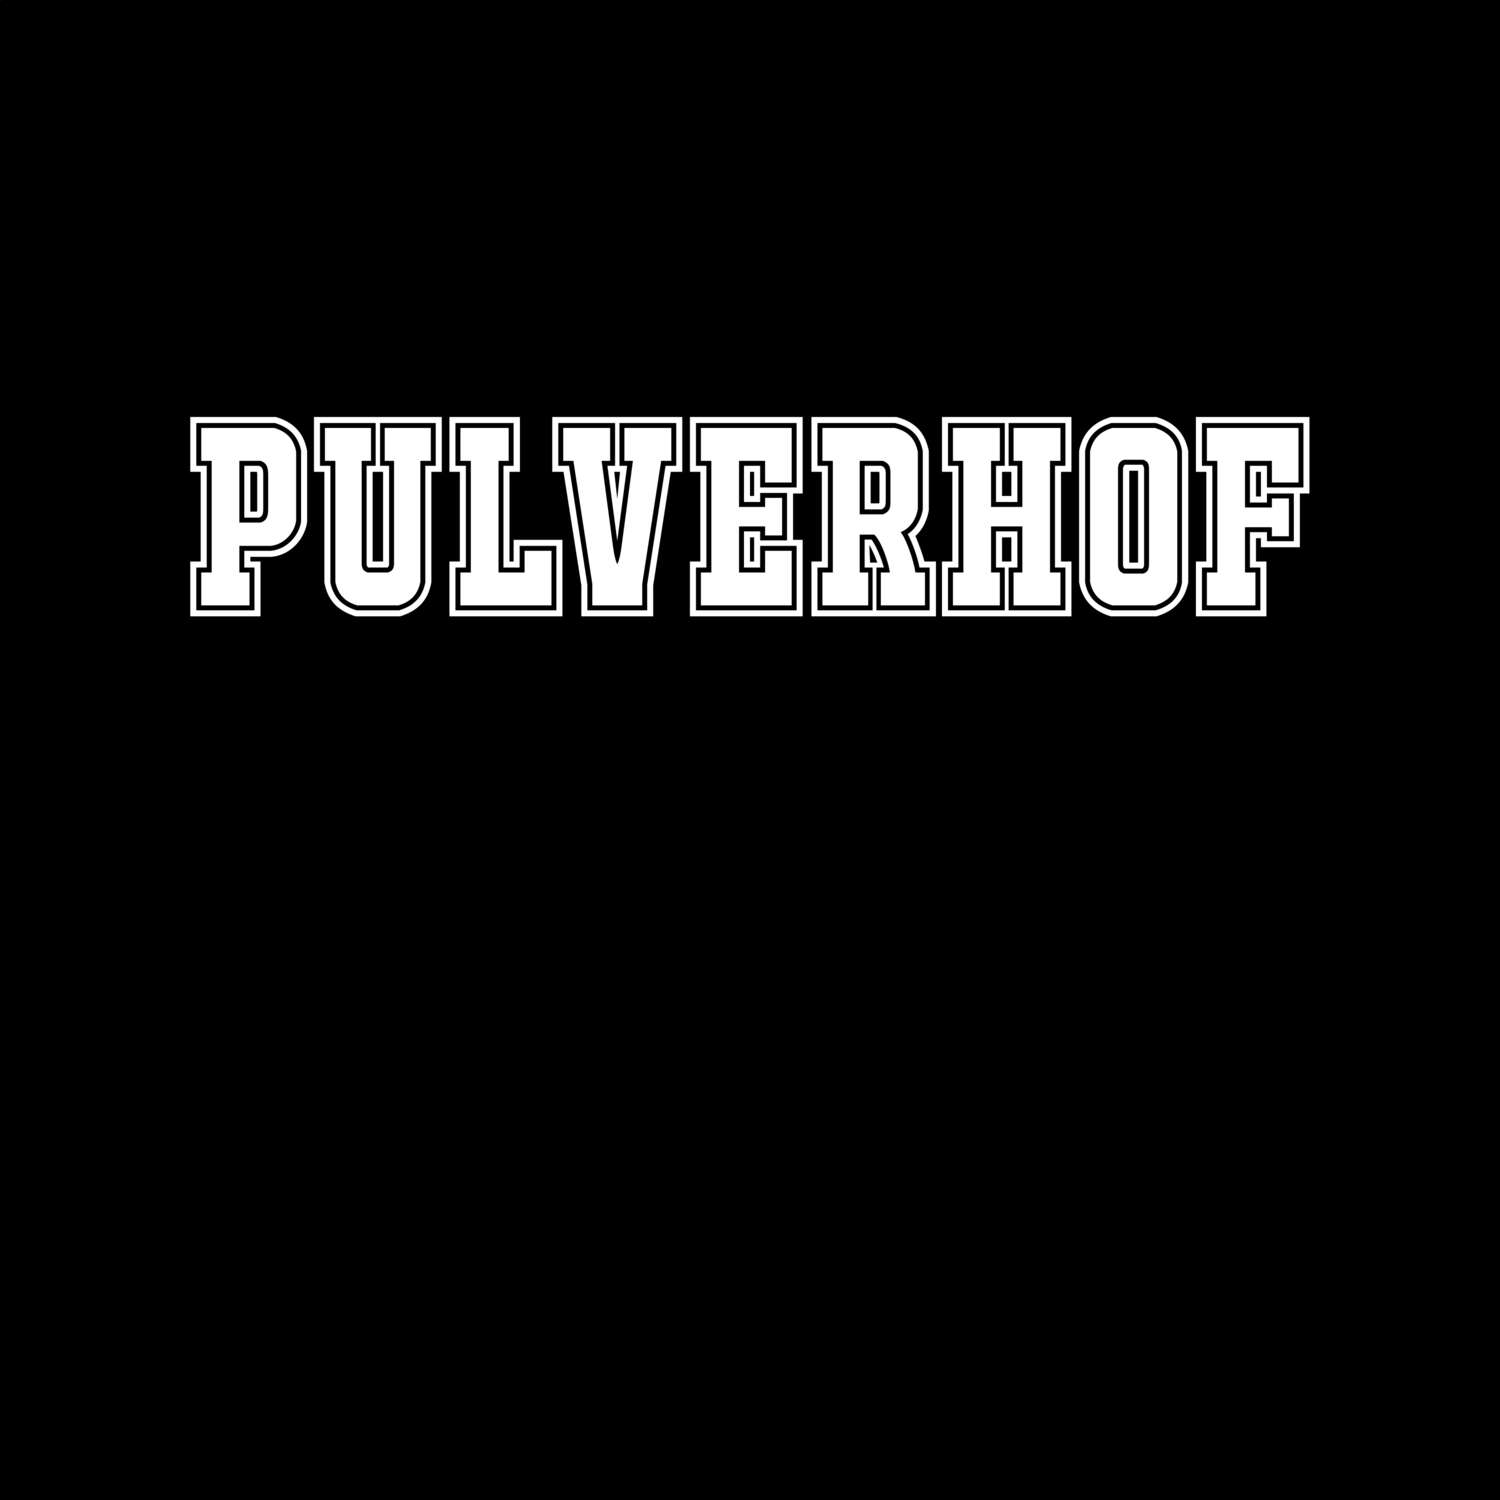 Pulverhof T-Shirt »Classic«